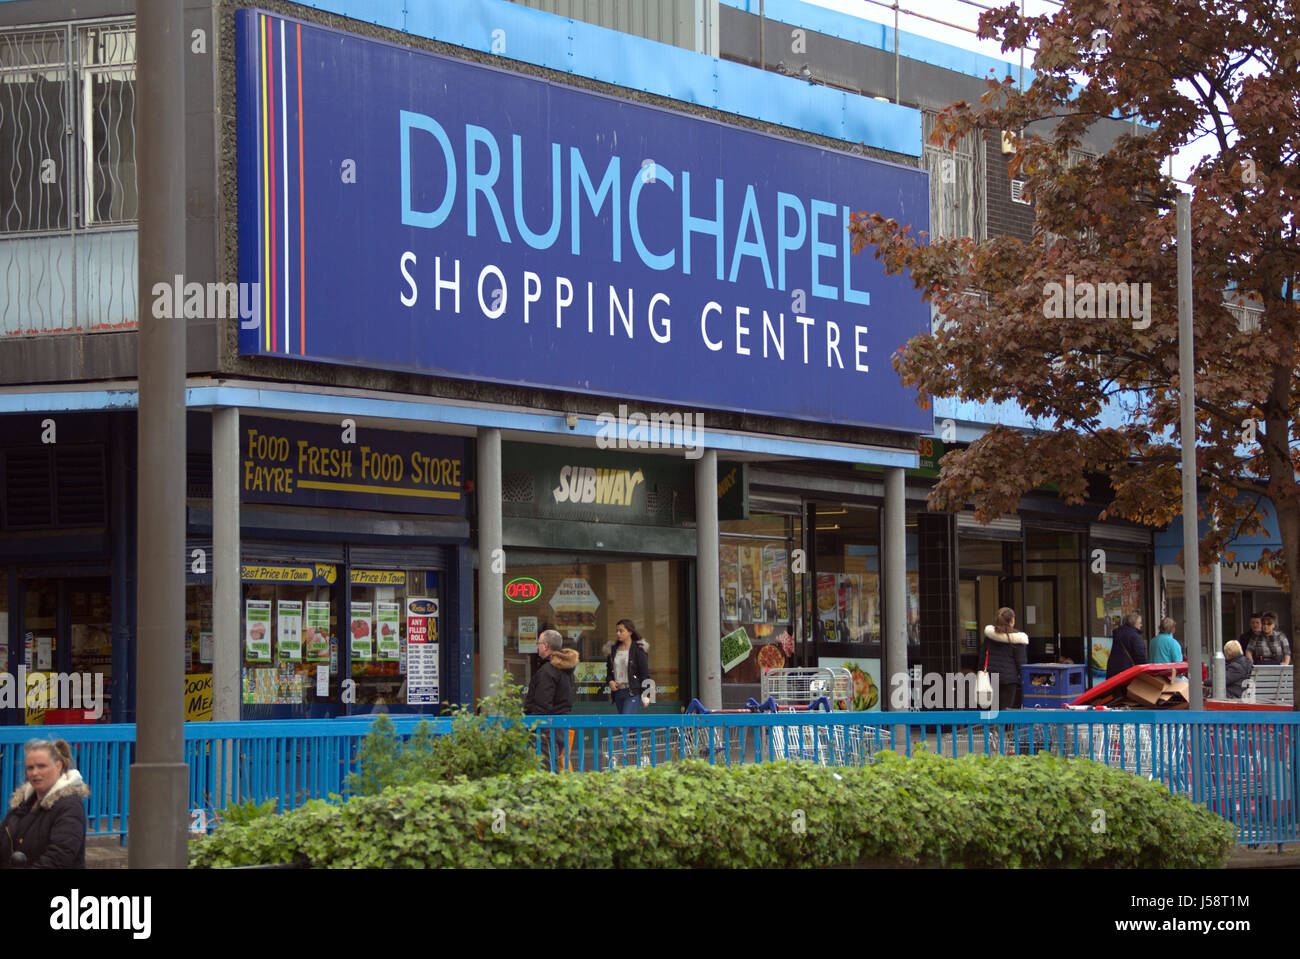 Drumchapel logement shopping centre de la misère sociale la pauvreté Banque D'Images